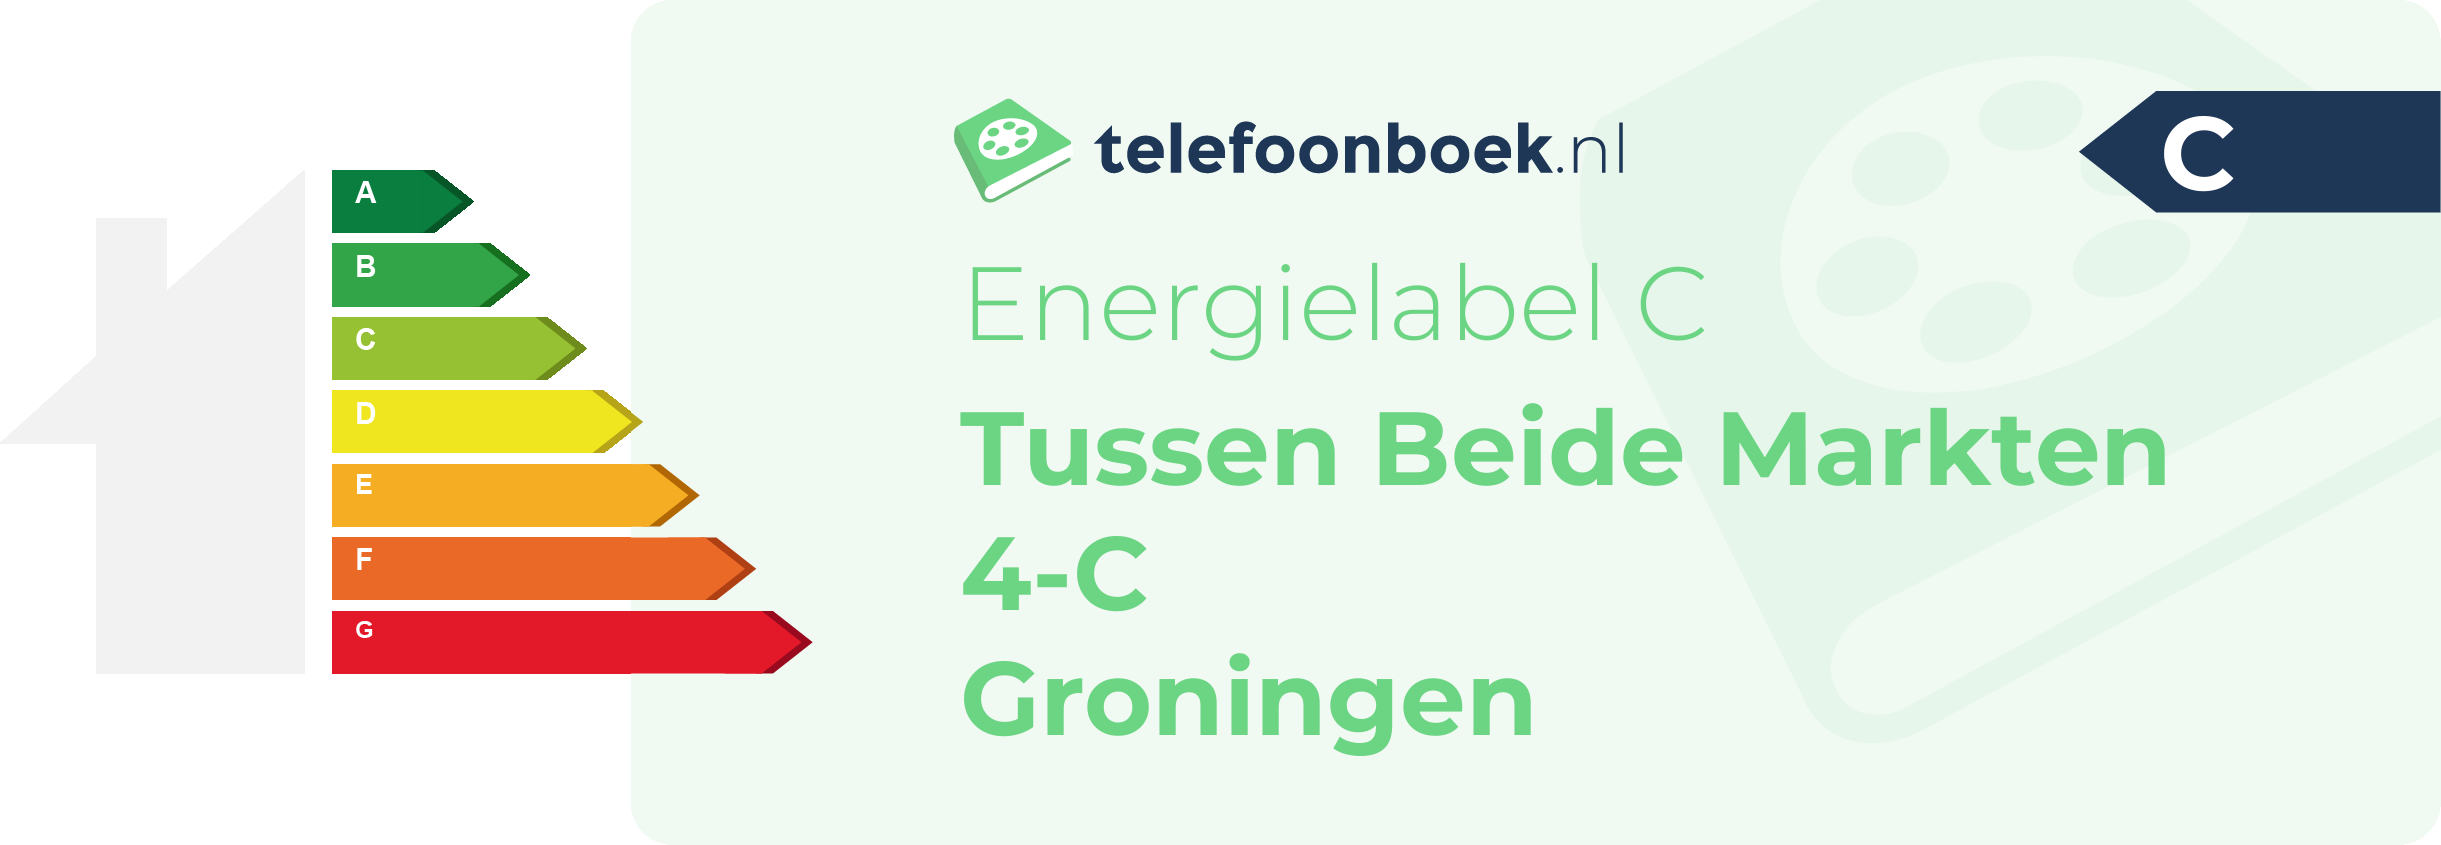 Energielabel Tussen Beide Markten 4-C Groningen